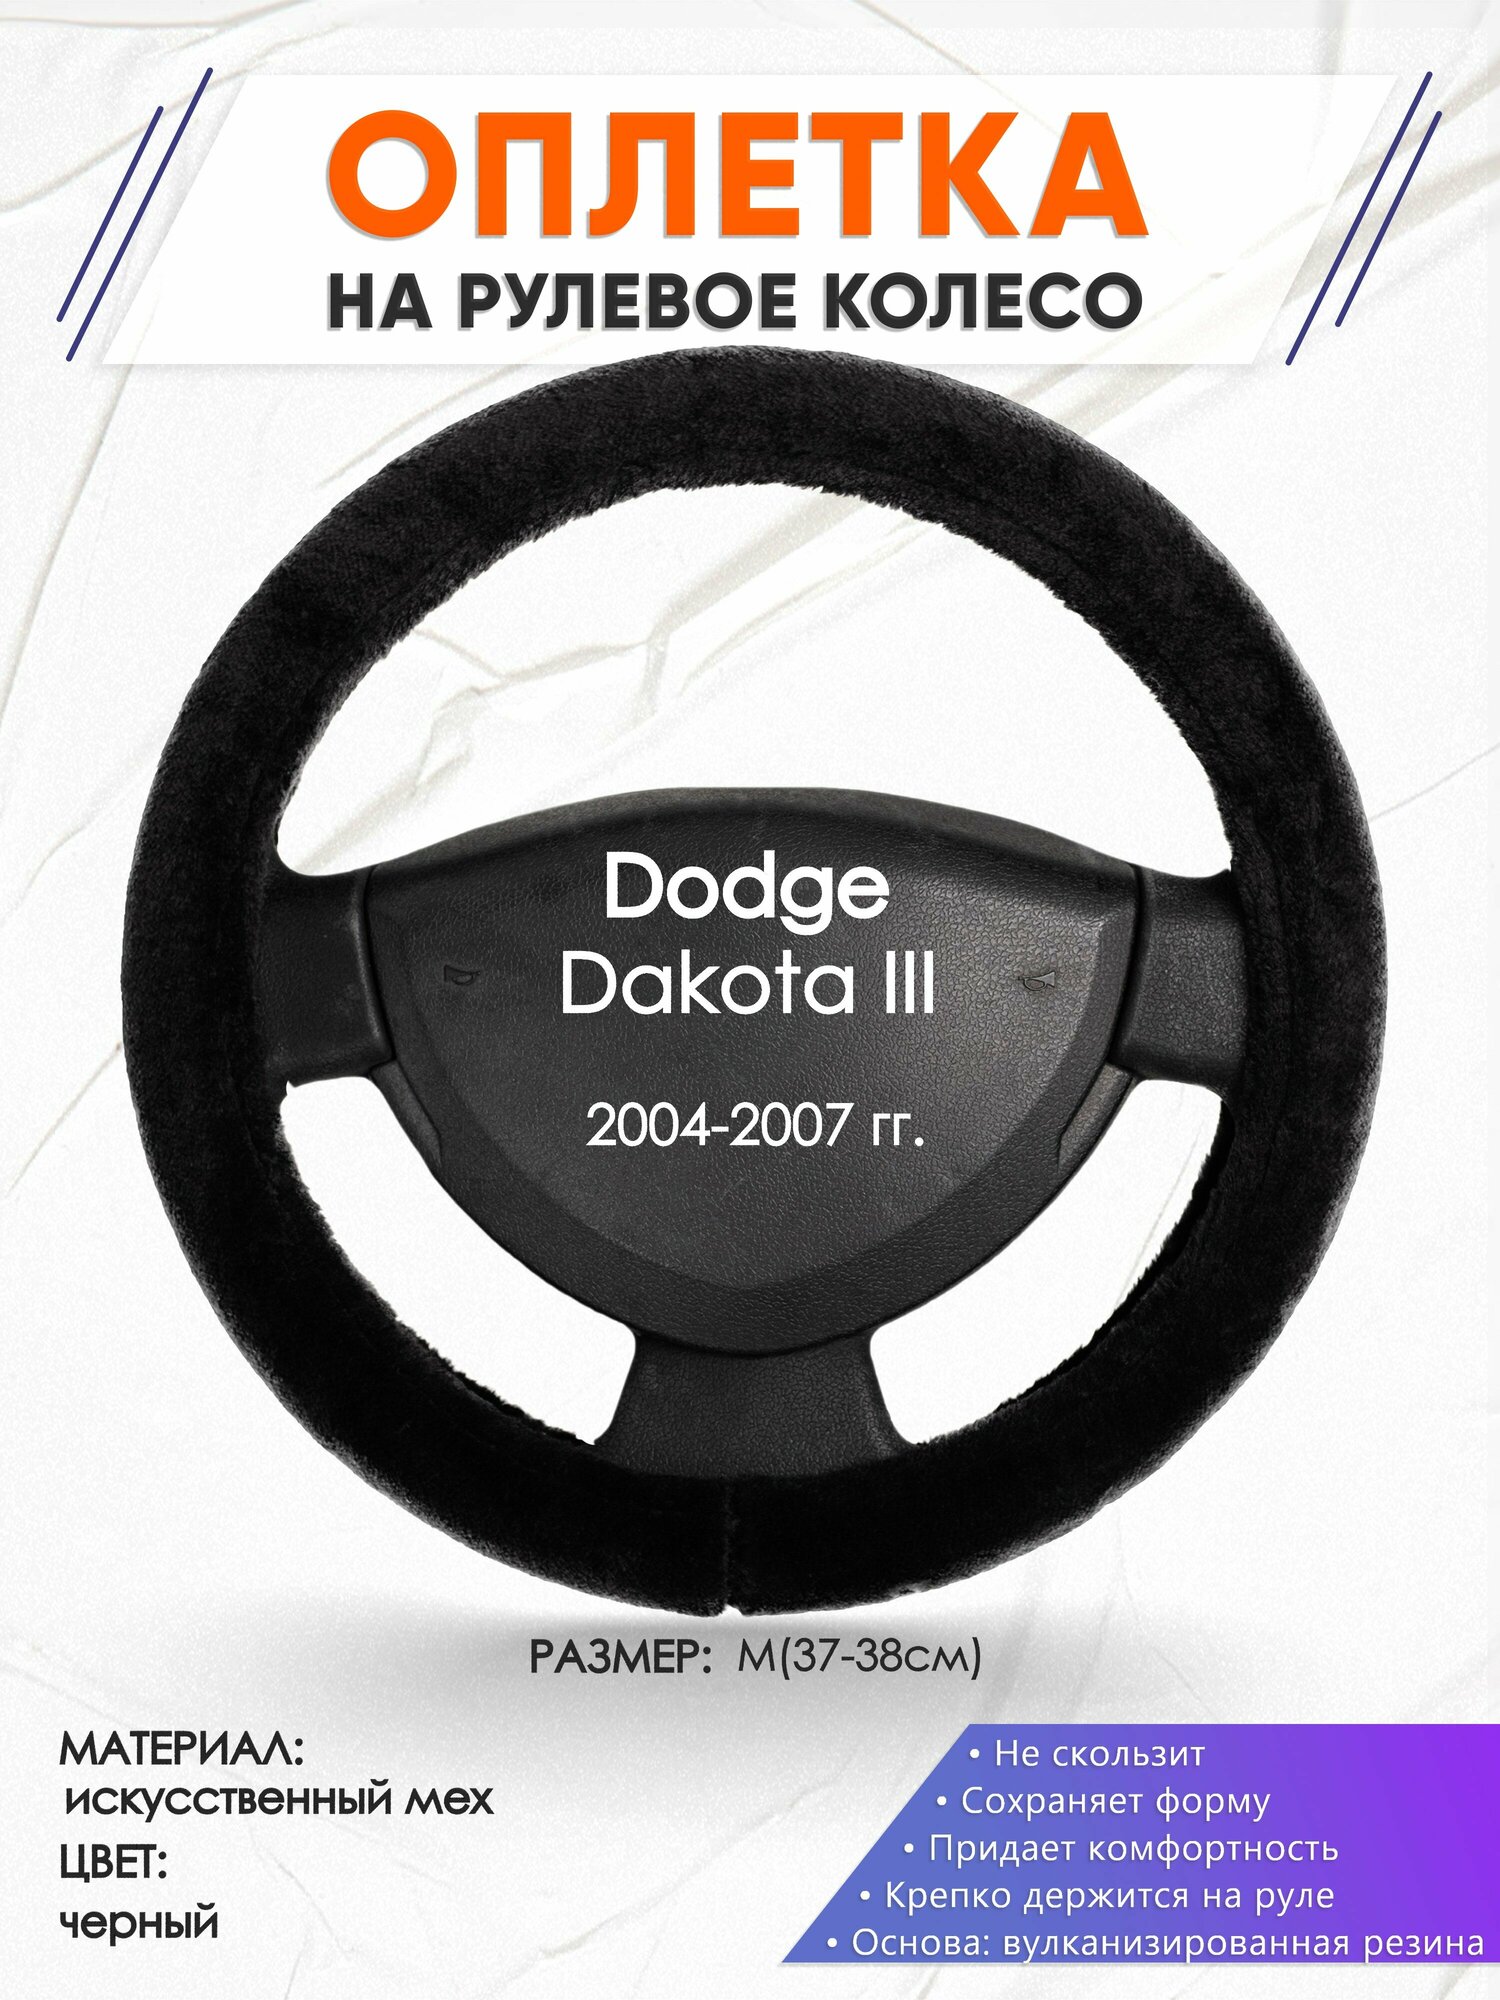 Оплетка наруль для Dodge Dakota 3(Додж Дакота 3) 2004-2007 годов выпуска, размер M(37-38см), Искусственный мех 45